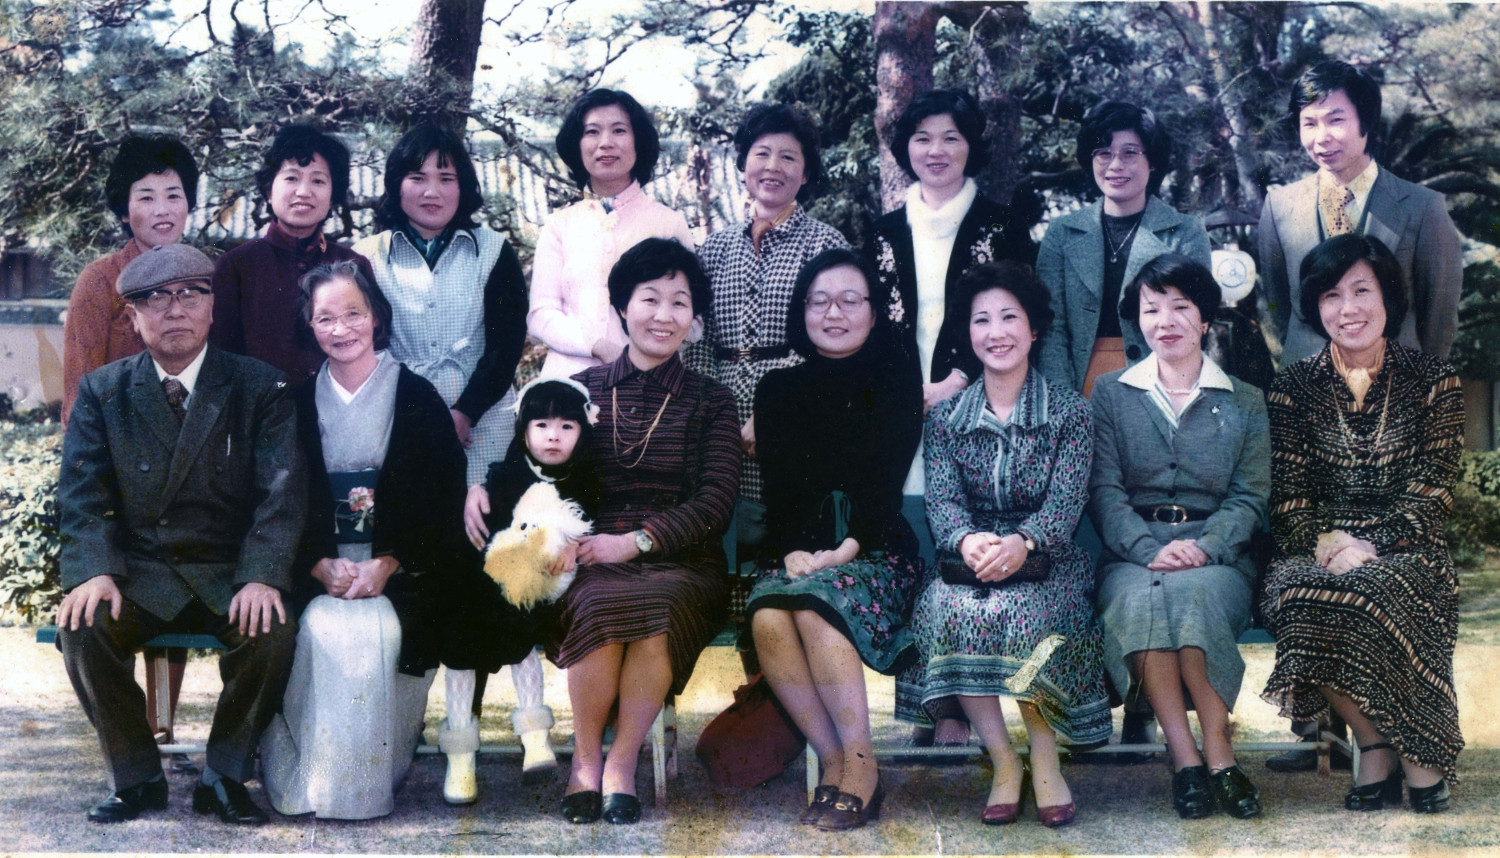 高知支部発足の始まりとなった、香川芳子先生ご来高時の写真です。中央が芳子先生です